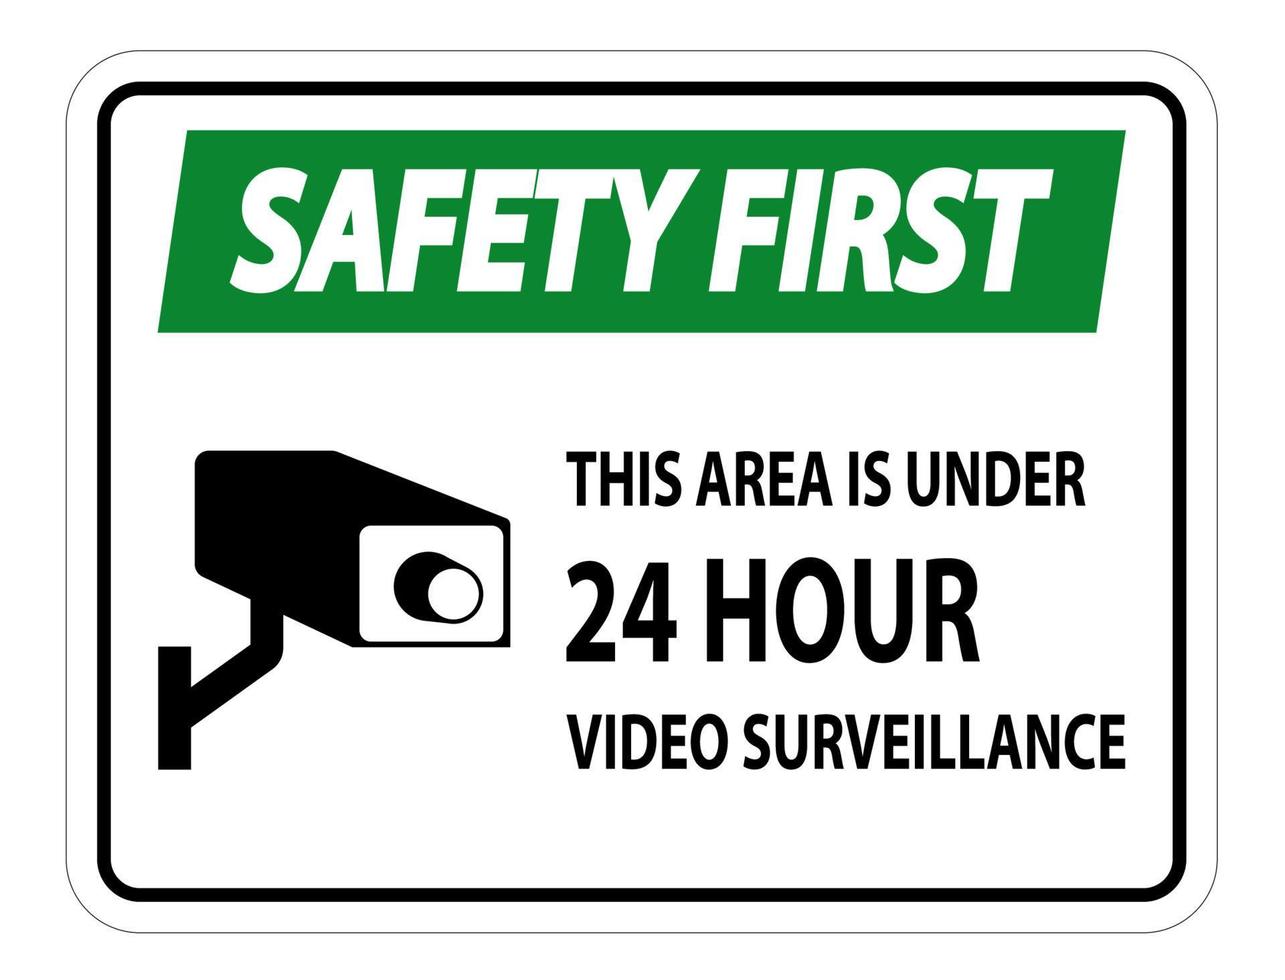 La seguridad es lo primero, esta área tiene menos de 24 horas, símbolo de vigilancia por video, signo aislado sobre fondo blanco, ilustración vectorial vector